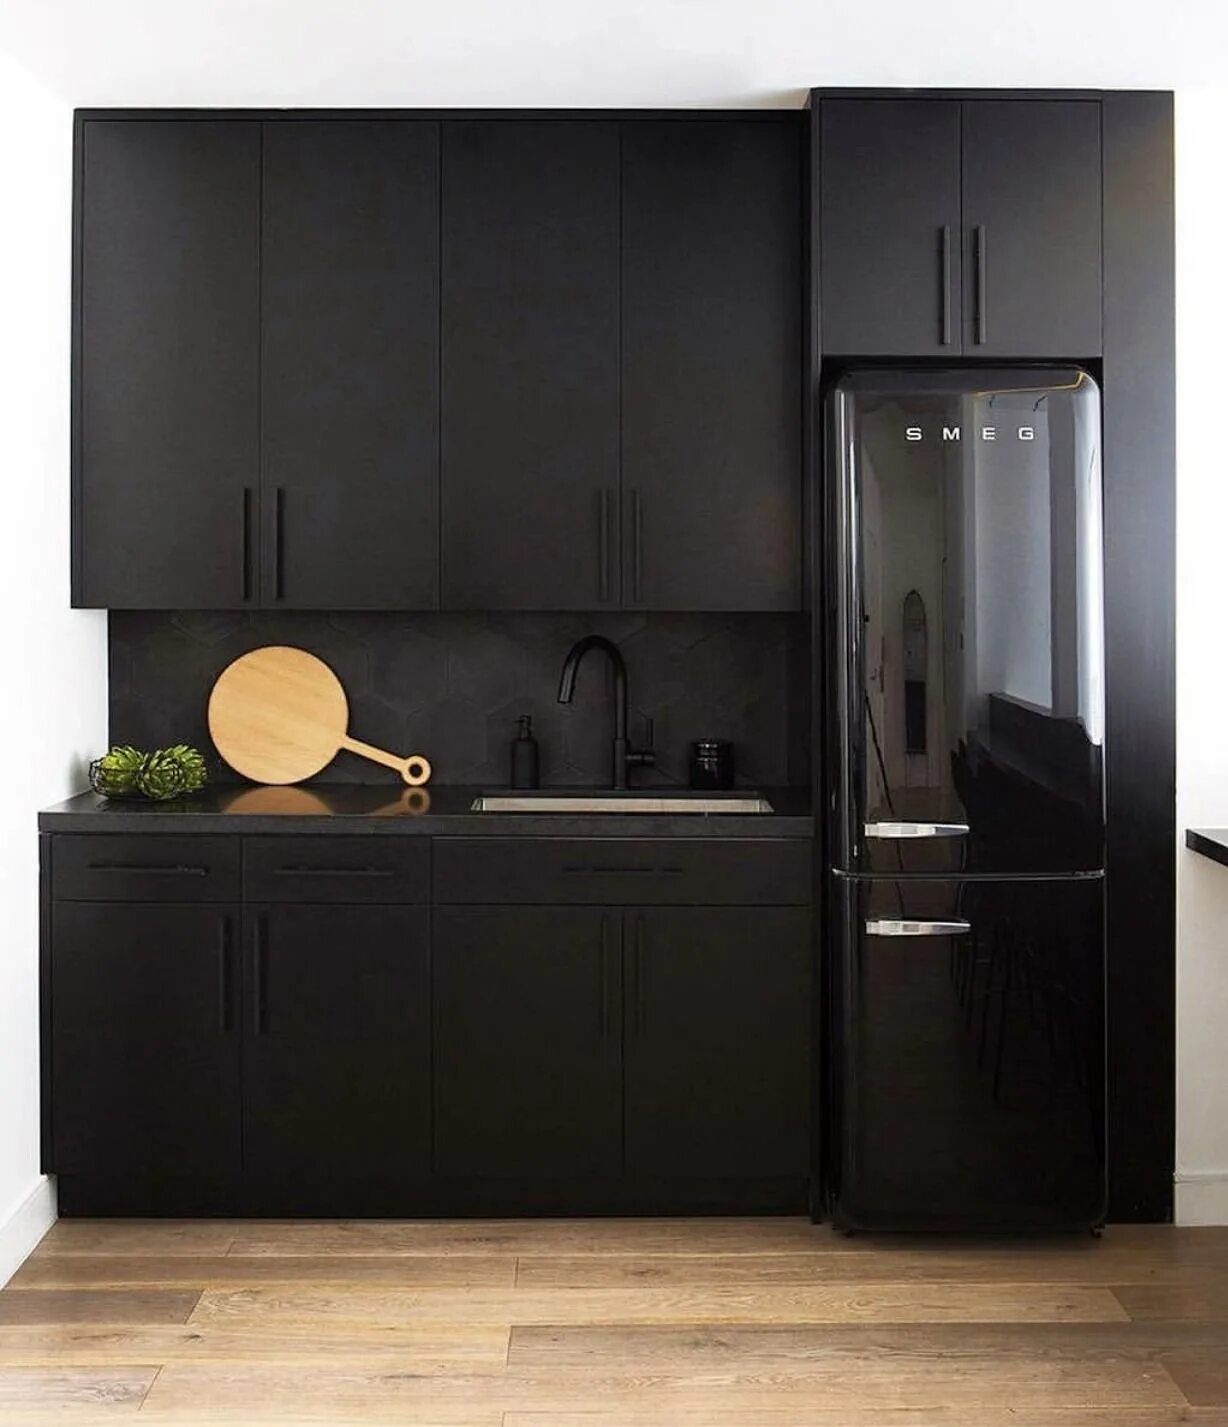 Кухня с черным холодильником. Черный холодильник Смег матовый. Черная матовая кухня. Черный холодильник в интерьере.